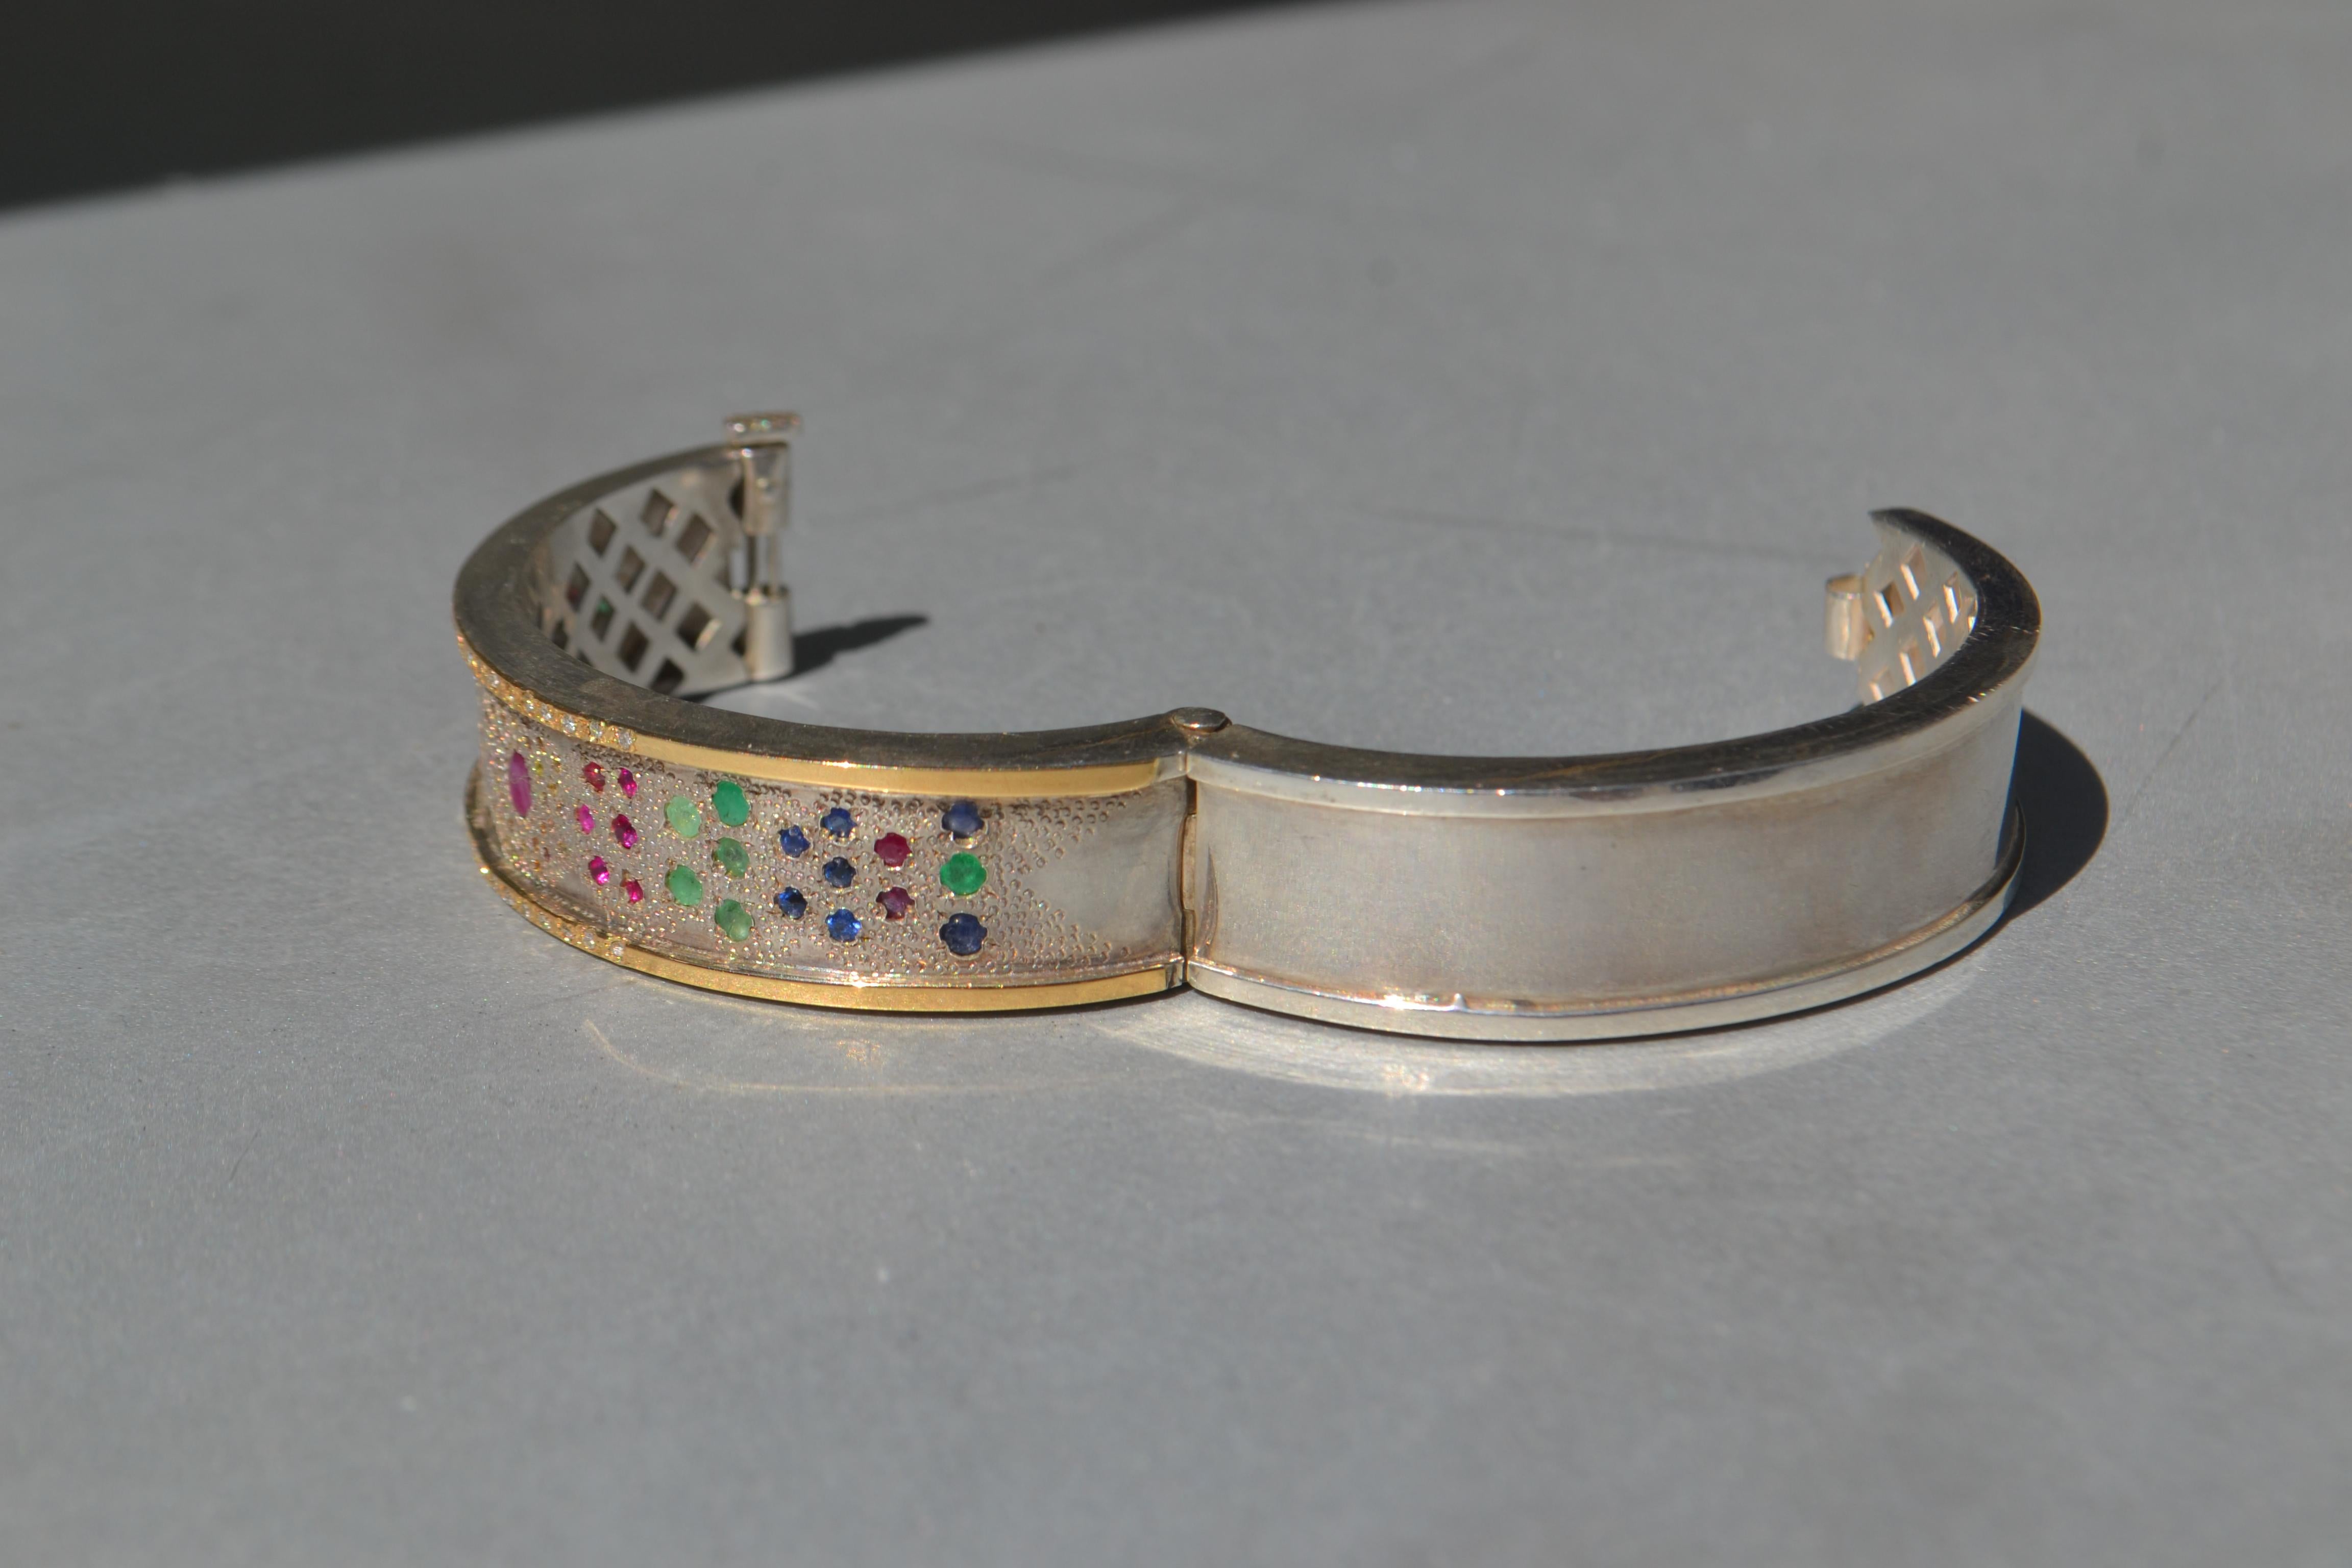 Ce bracelet est un design d'inspiration arabe avec une texture de granit dans la base, et avec une incrustation de pierres précieuses comme l'émeraude, les saphirs, les rubis, son poids est de 25 grammes entre l'or 18k et l'argent et dans les côtés